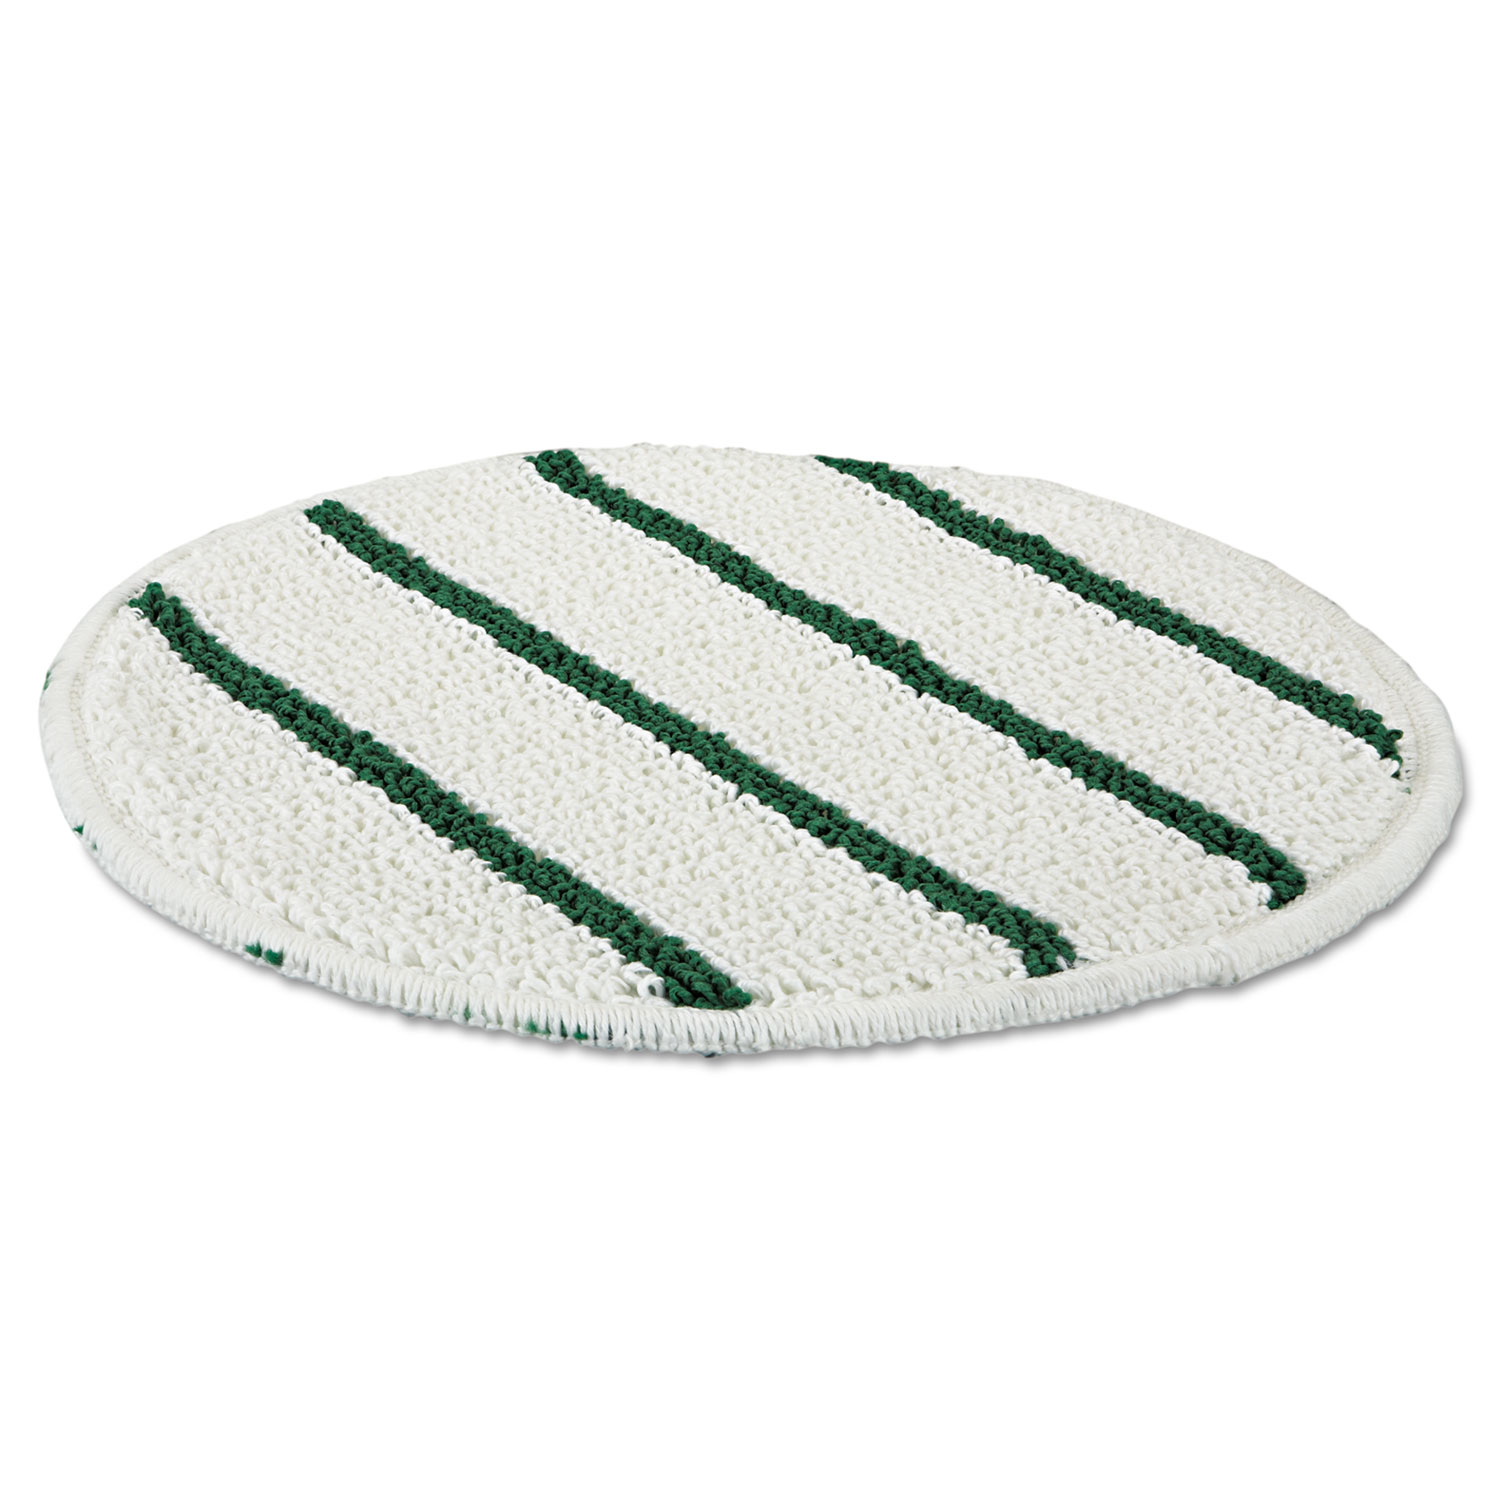 Low Profile Scrub-Strip Carpet Bonnet, 19 Diameter, White/Green, 5/Carton